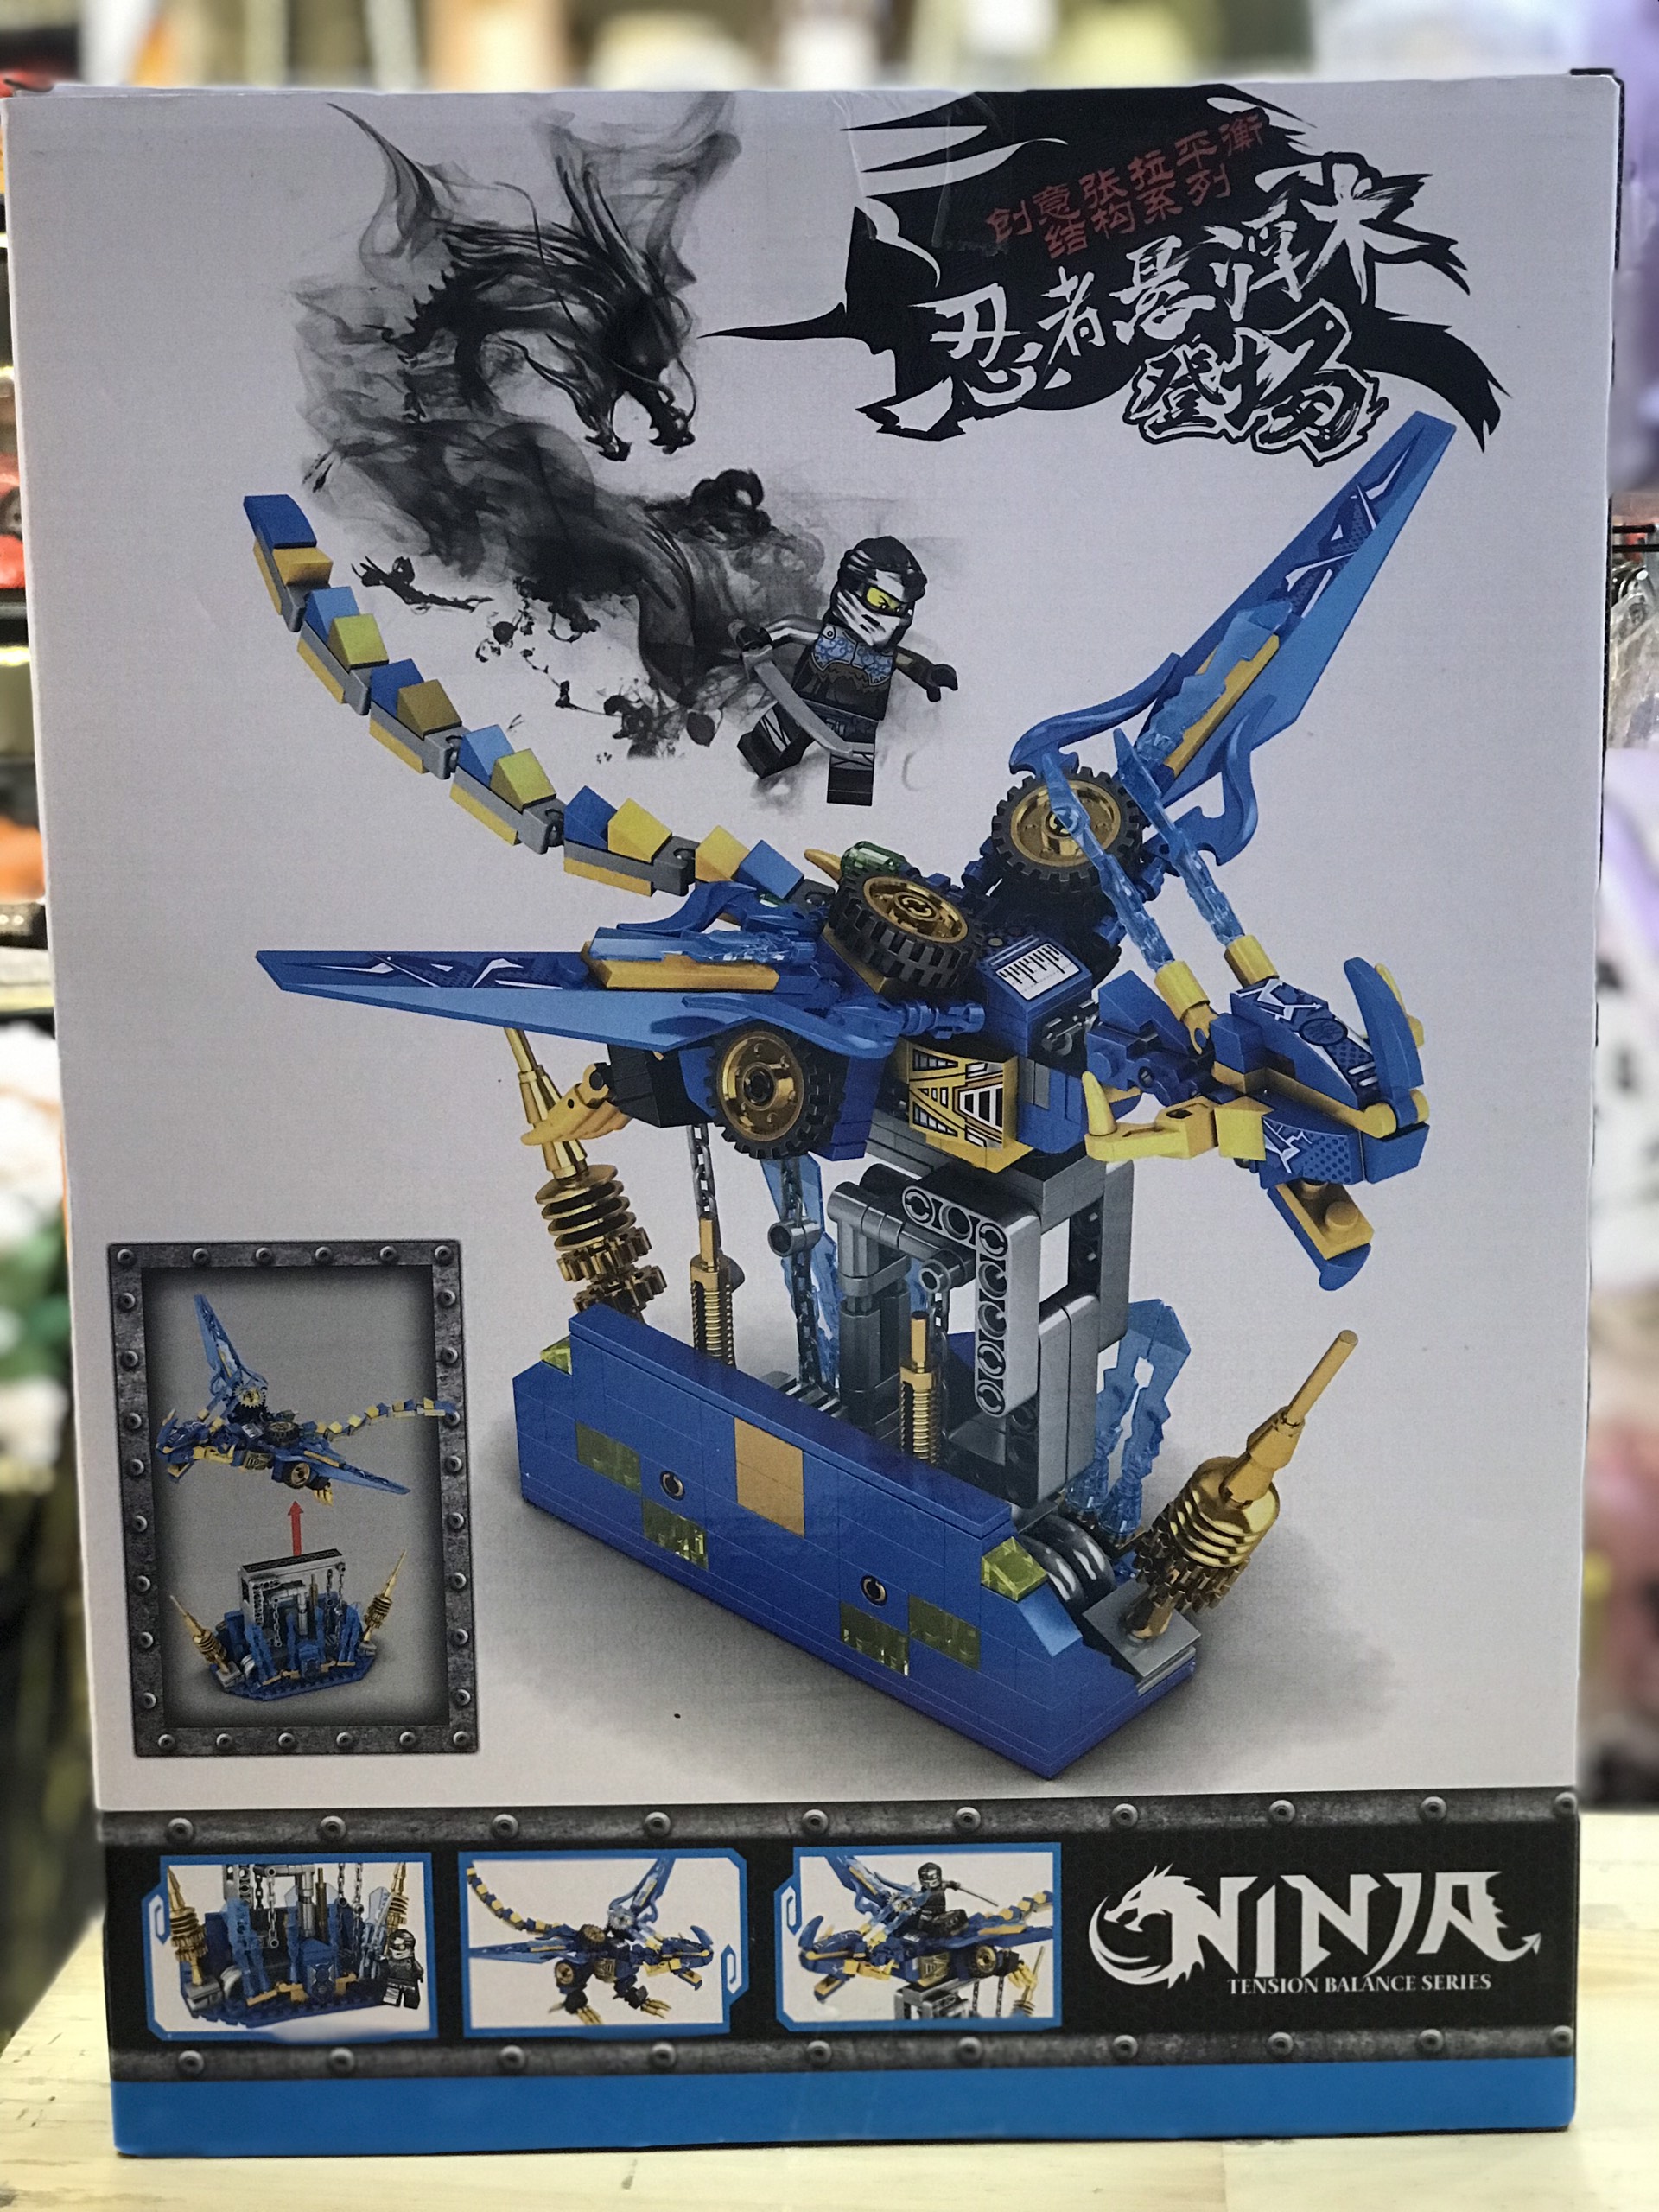 Lego Rồng xanh Ninja 495pcs